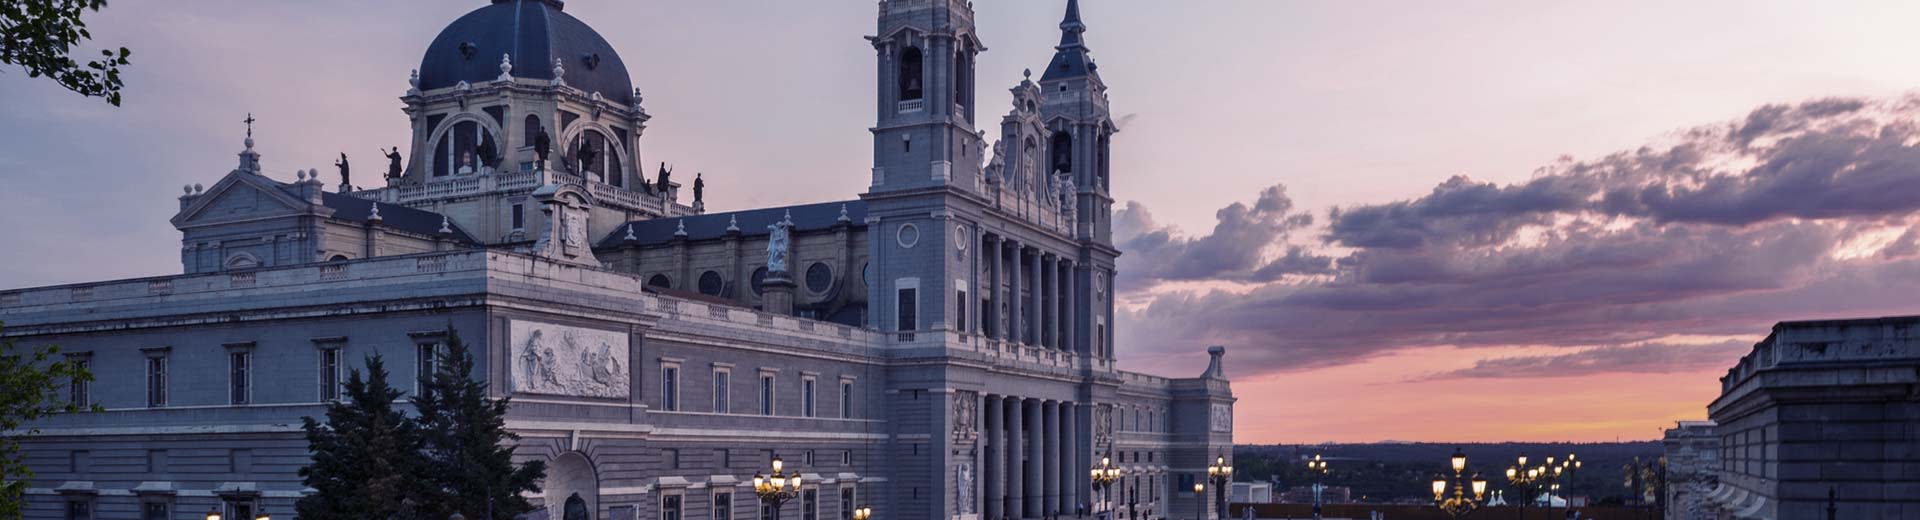 Un beau coucher de soleil sur la ville de Madrid avec une cathédrale imminente au premier plan.